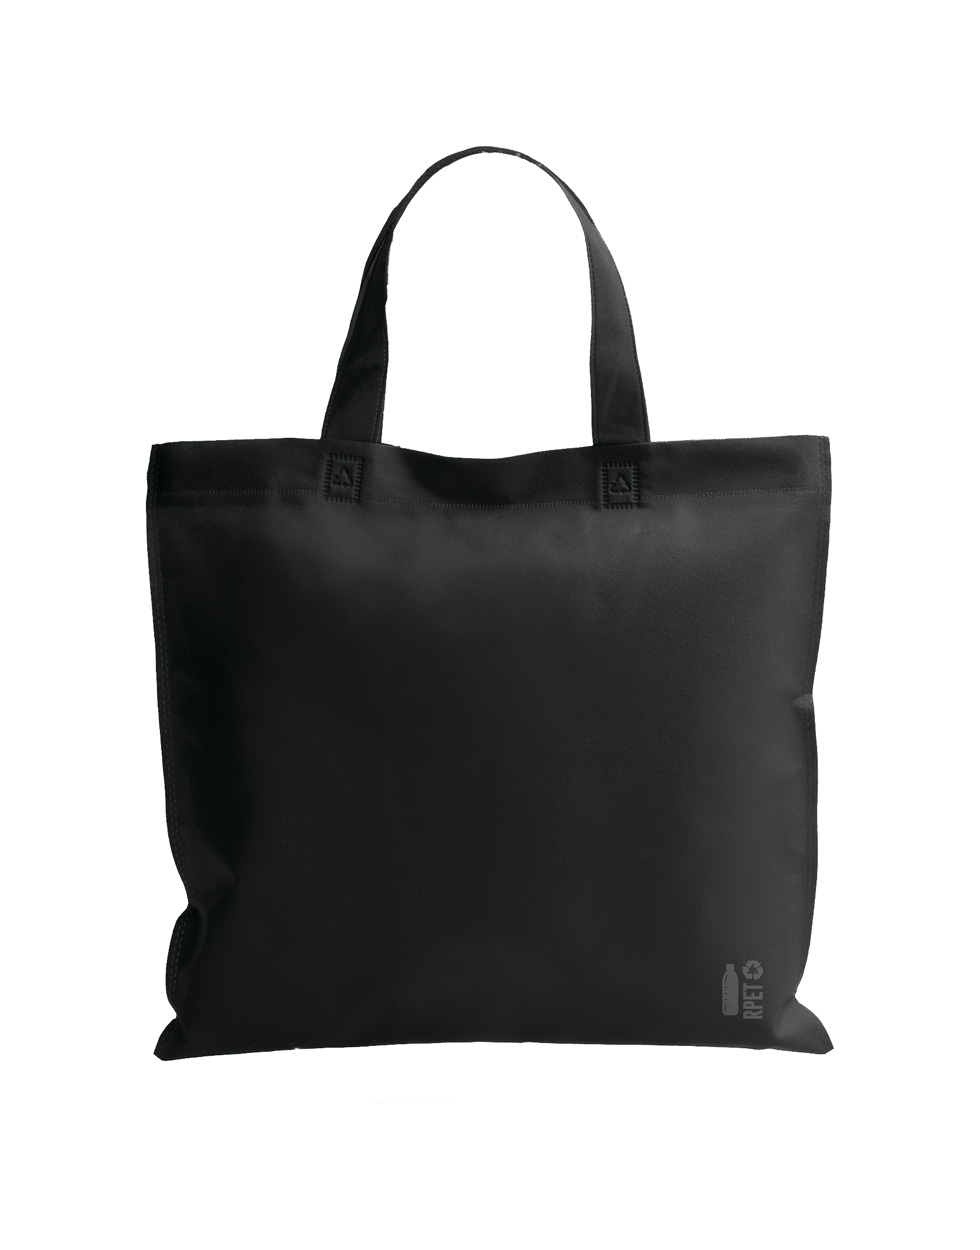 Raduin RPET shopping bag - black